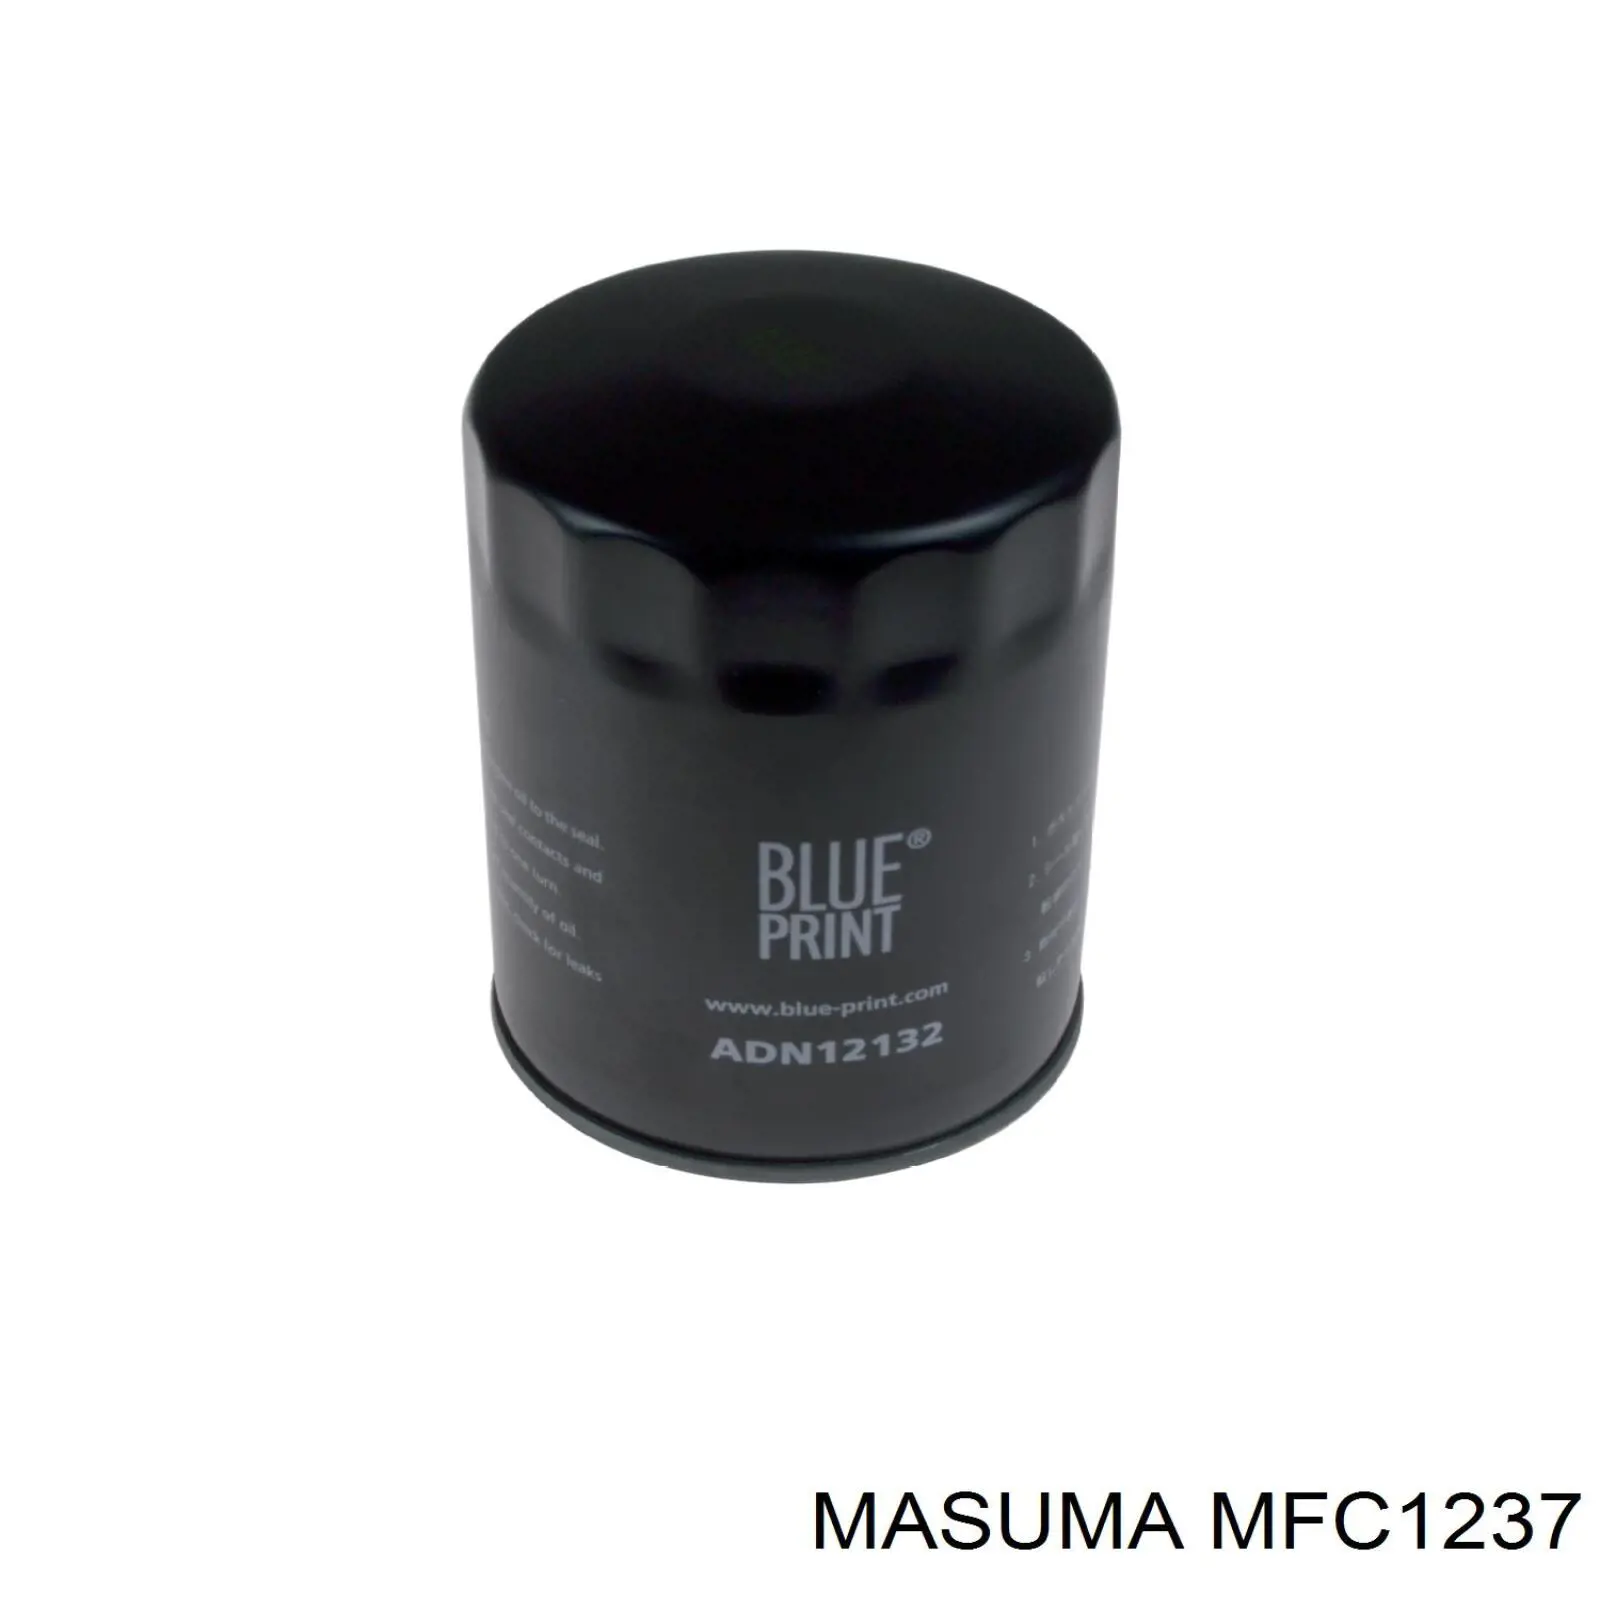 MFC1237 Masuma масляный фильтр